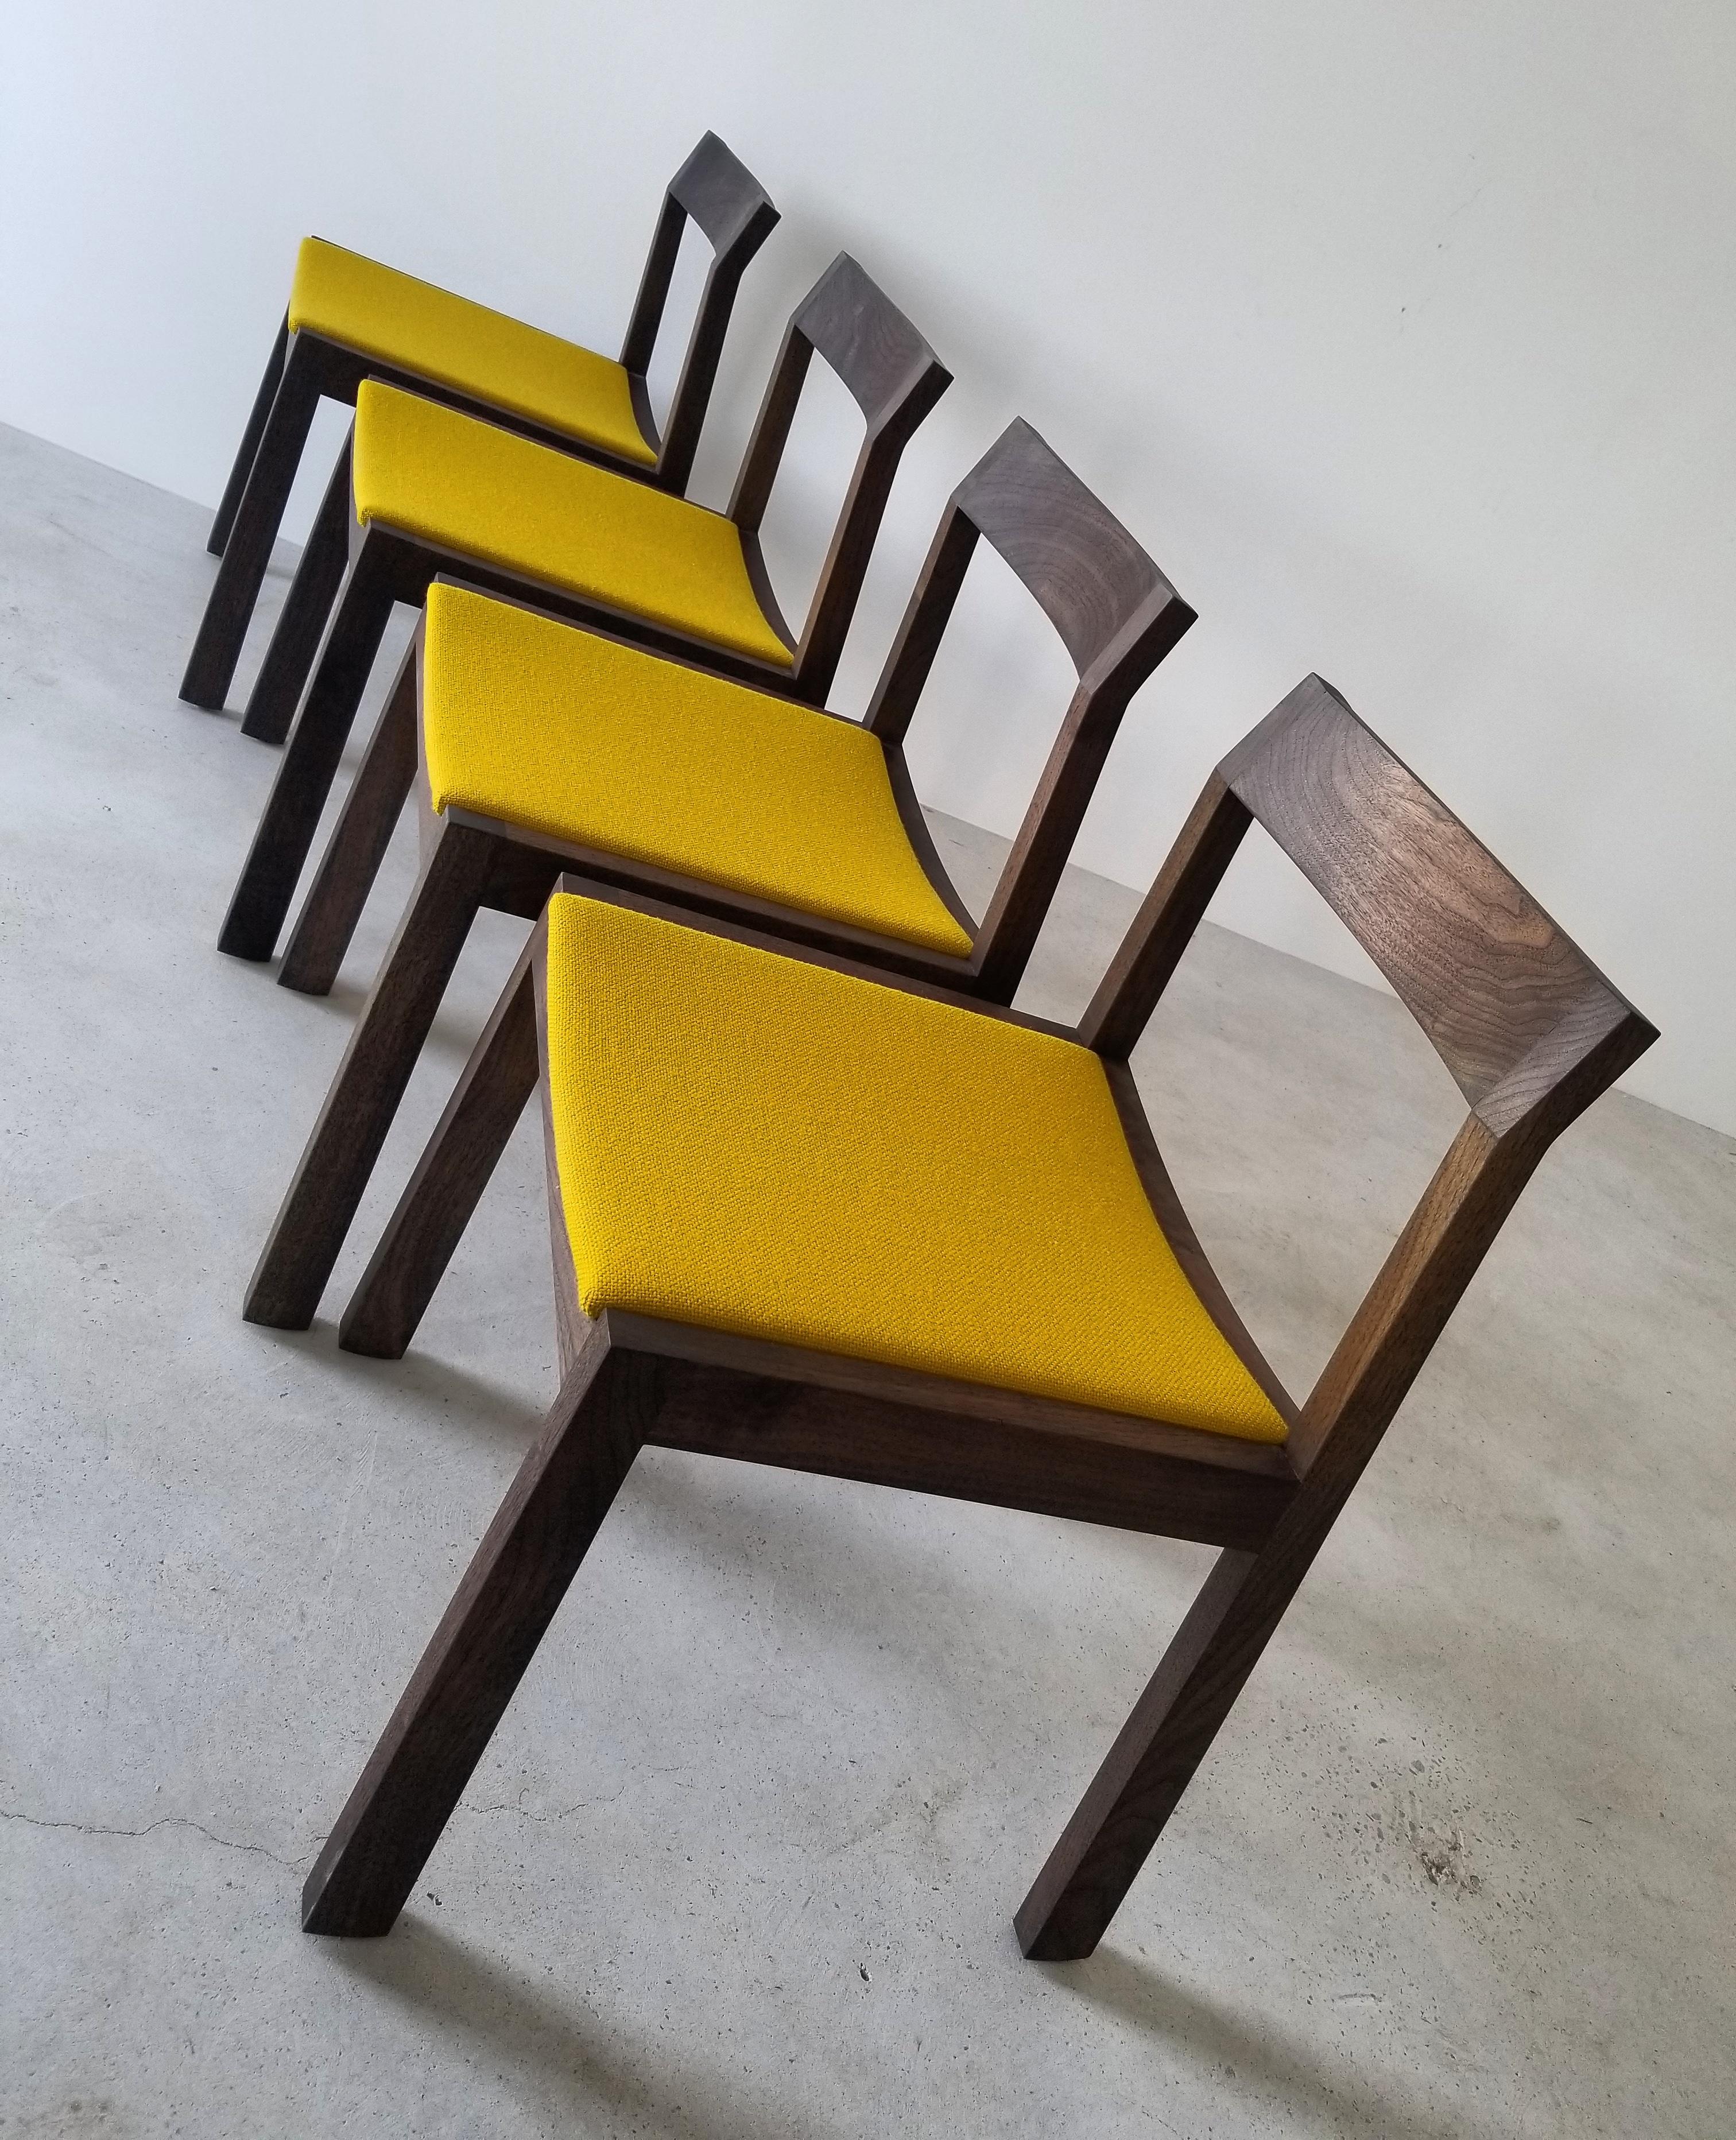 Der A+ Esszimmerstuhl ist aus Massivholz gefertigt und verfügt über einen geschwungenen, gepolsterten Sitz für Ihren Komfort sowie eine geformte Rückenlehne zur Unterstützung.
Ein klares, zeitgemäßes Design mit subtilen Details, das sich gut in